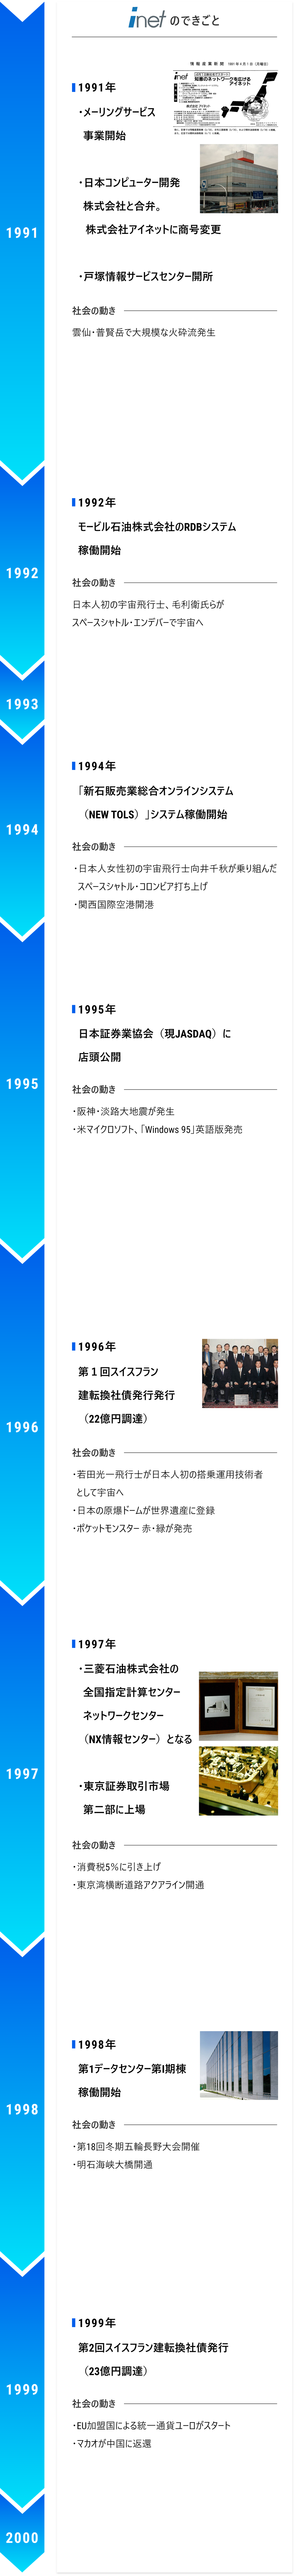 1991~2000 第1躍進期 年表